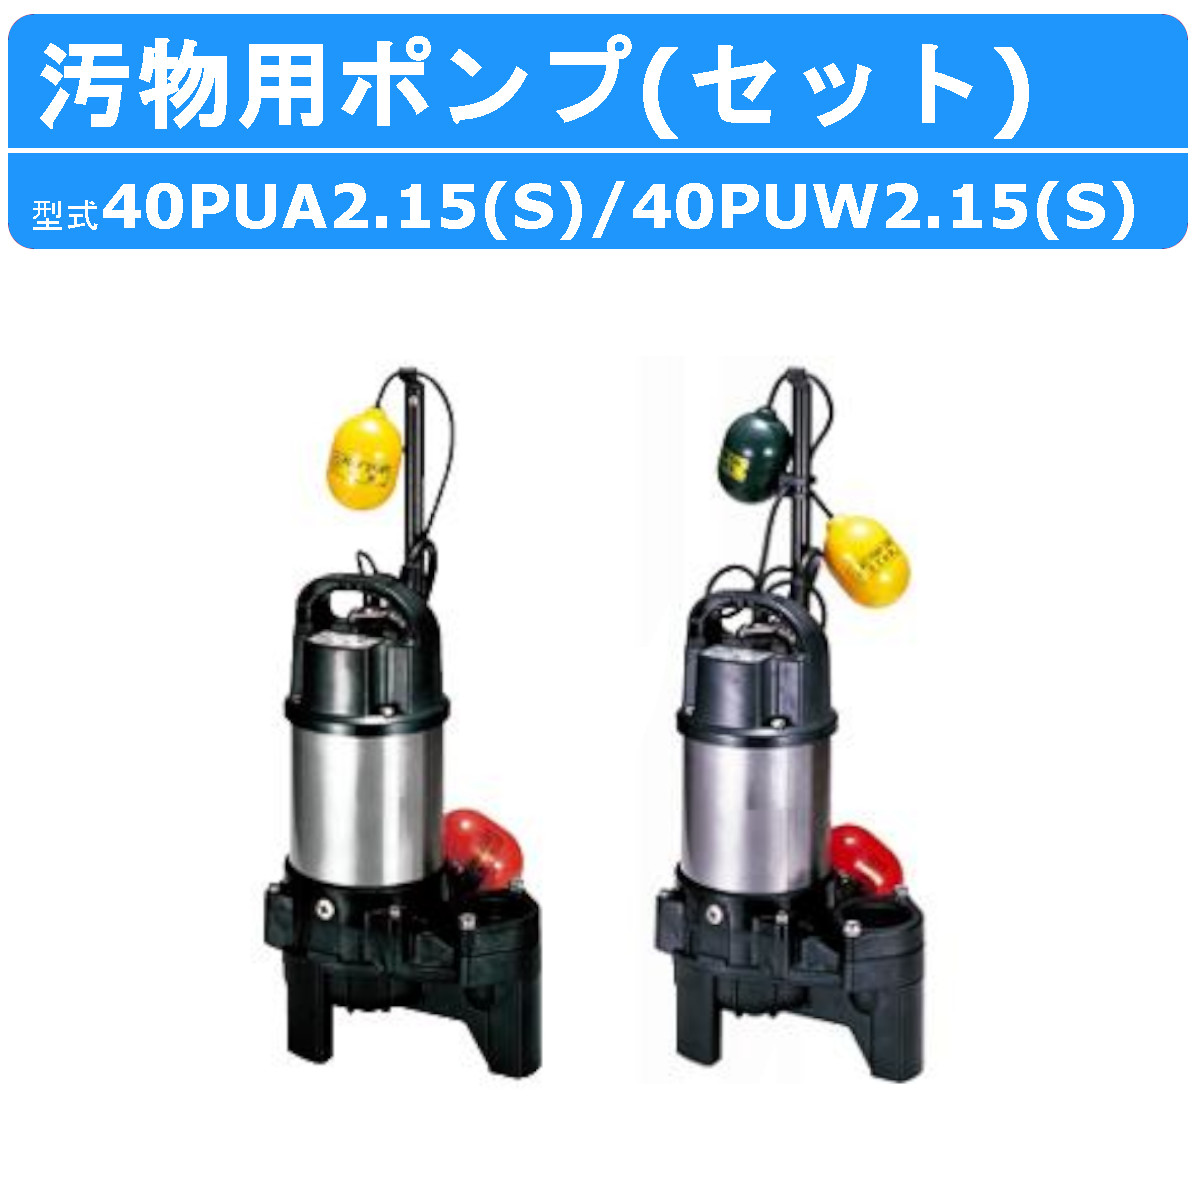 ○日本正規品○ ツルミポンプ 汚物用 水中ハイスピンポンプ 三相200V